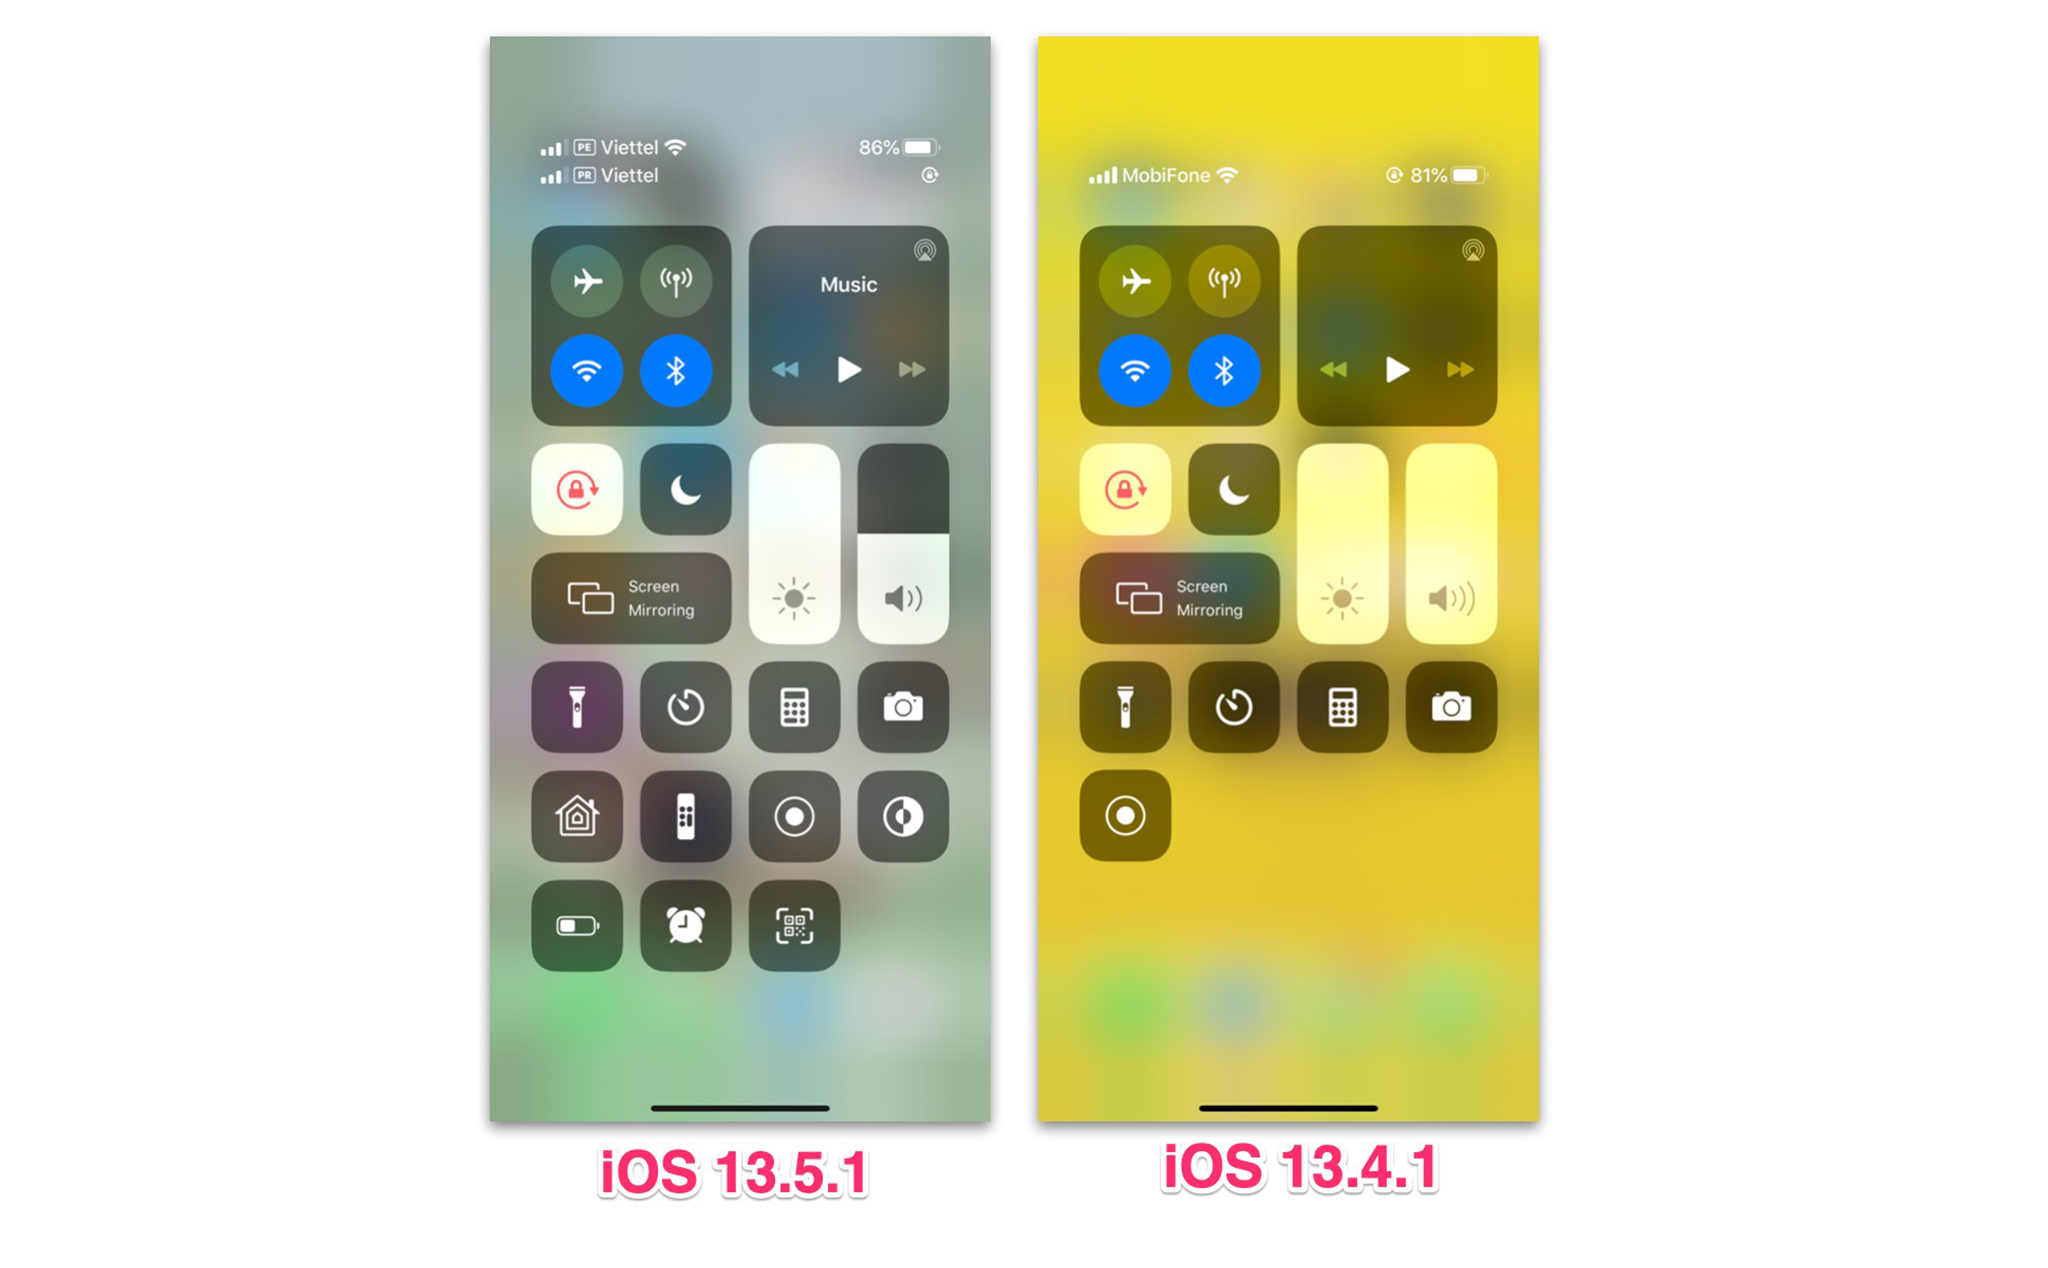 Thử test pin iPhone cho thấy iOS 13.5.1 ít hao pin hơn bản iOS cũ